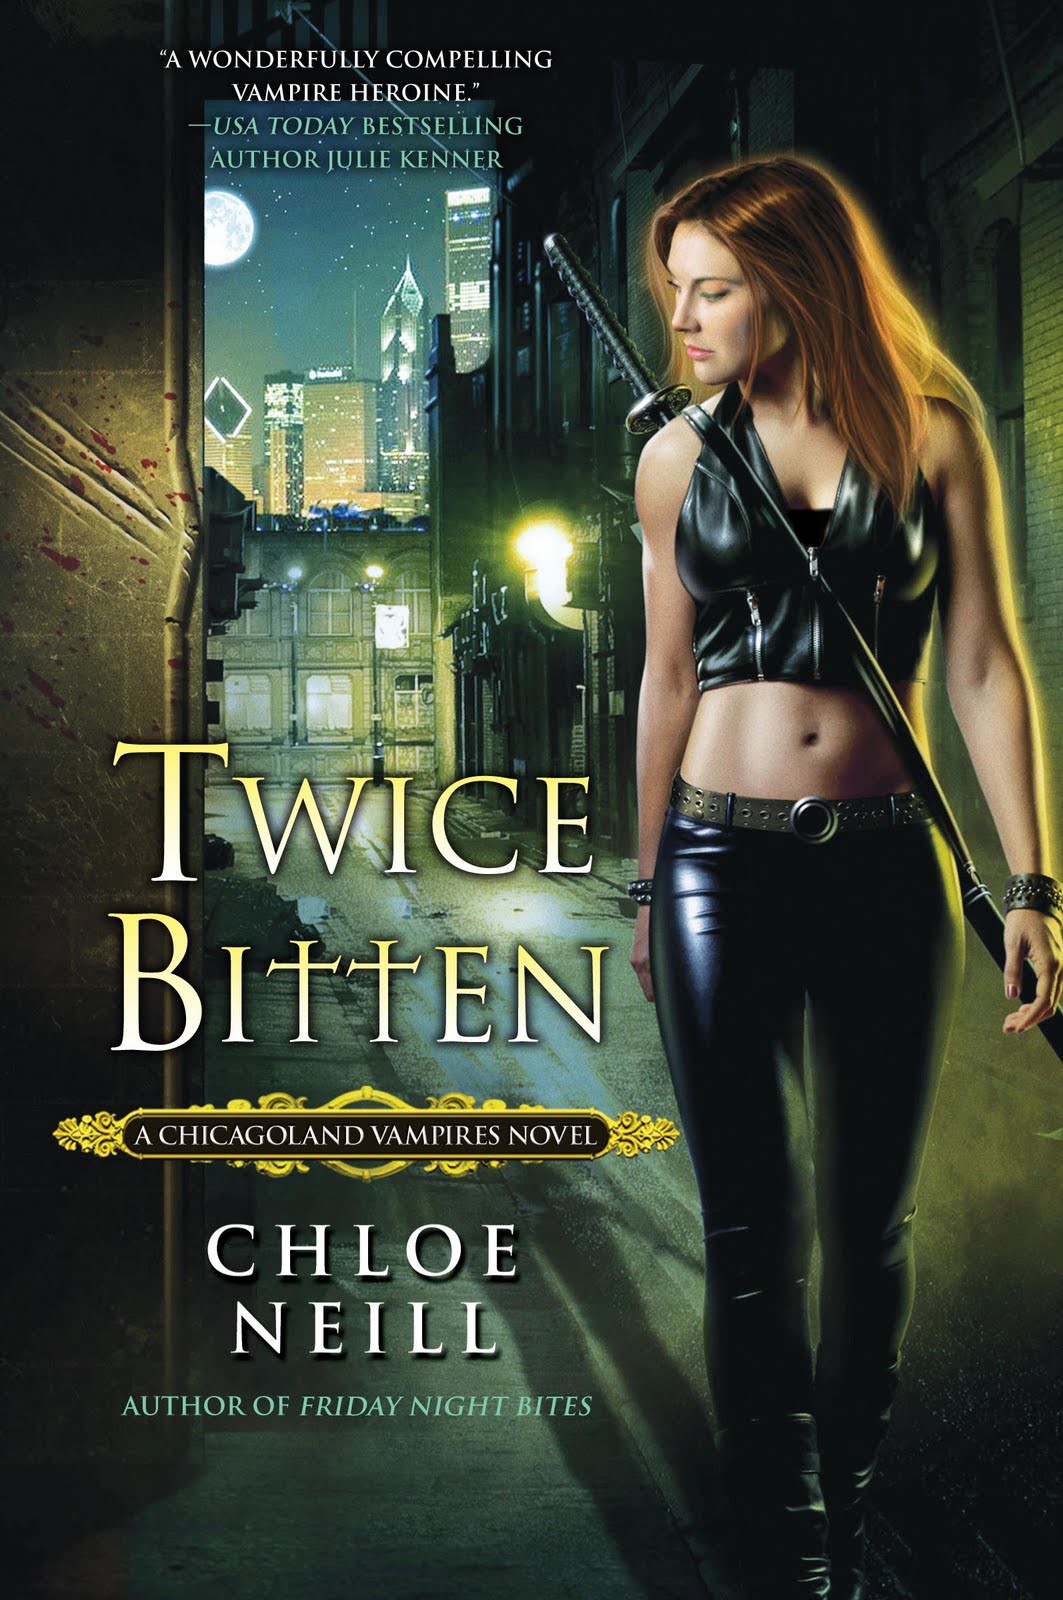 Twice Bitten (2014) by Chloe Neill